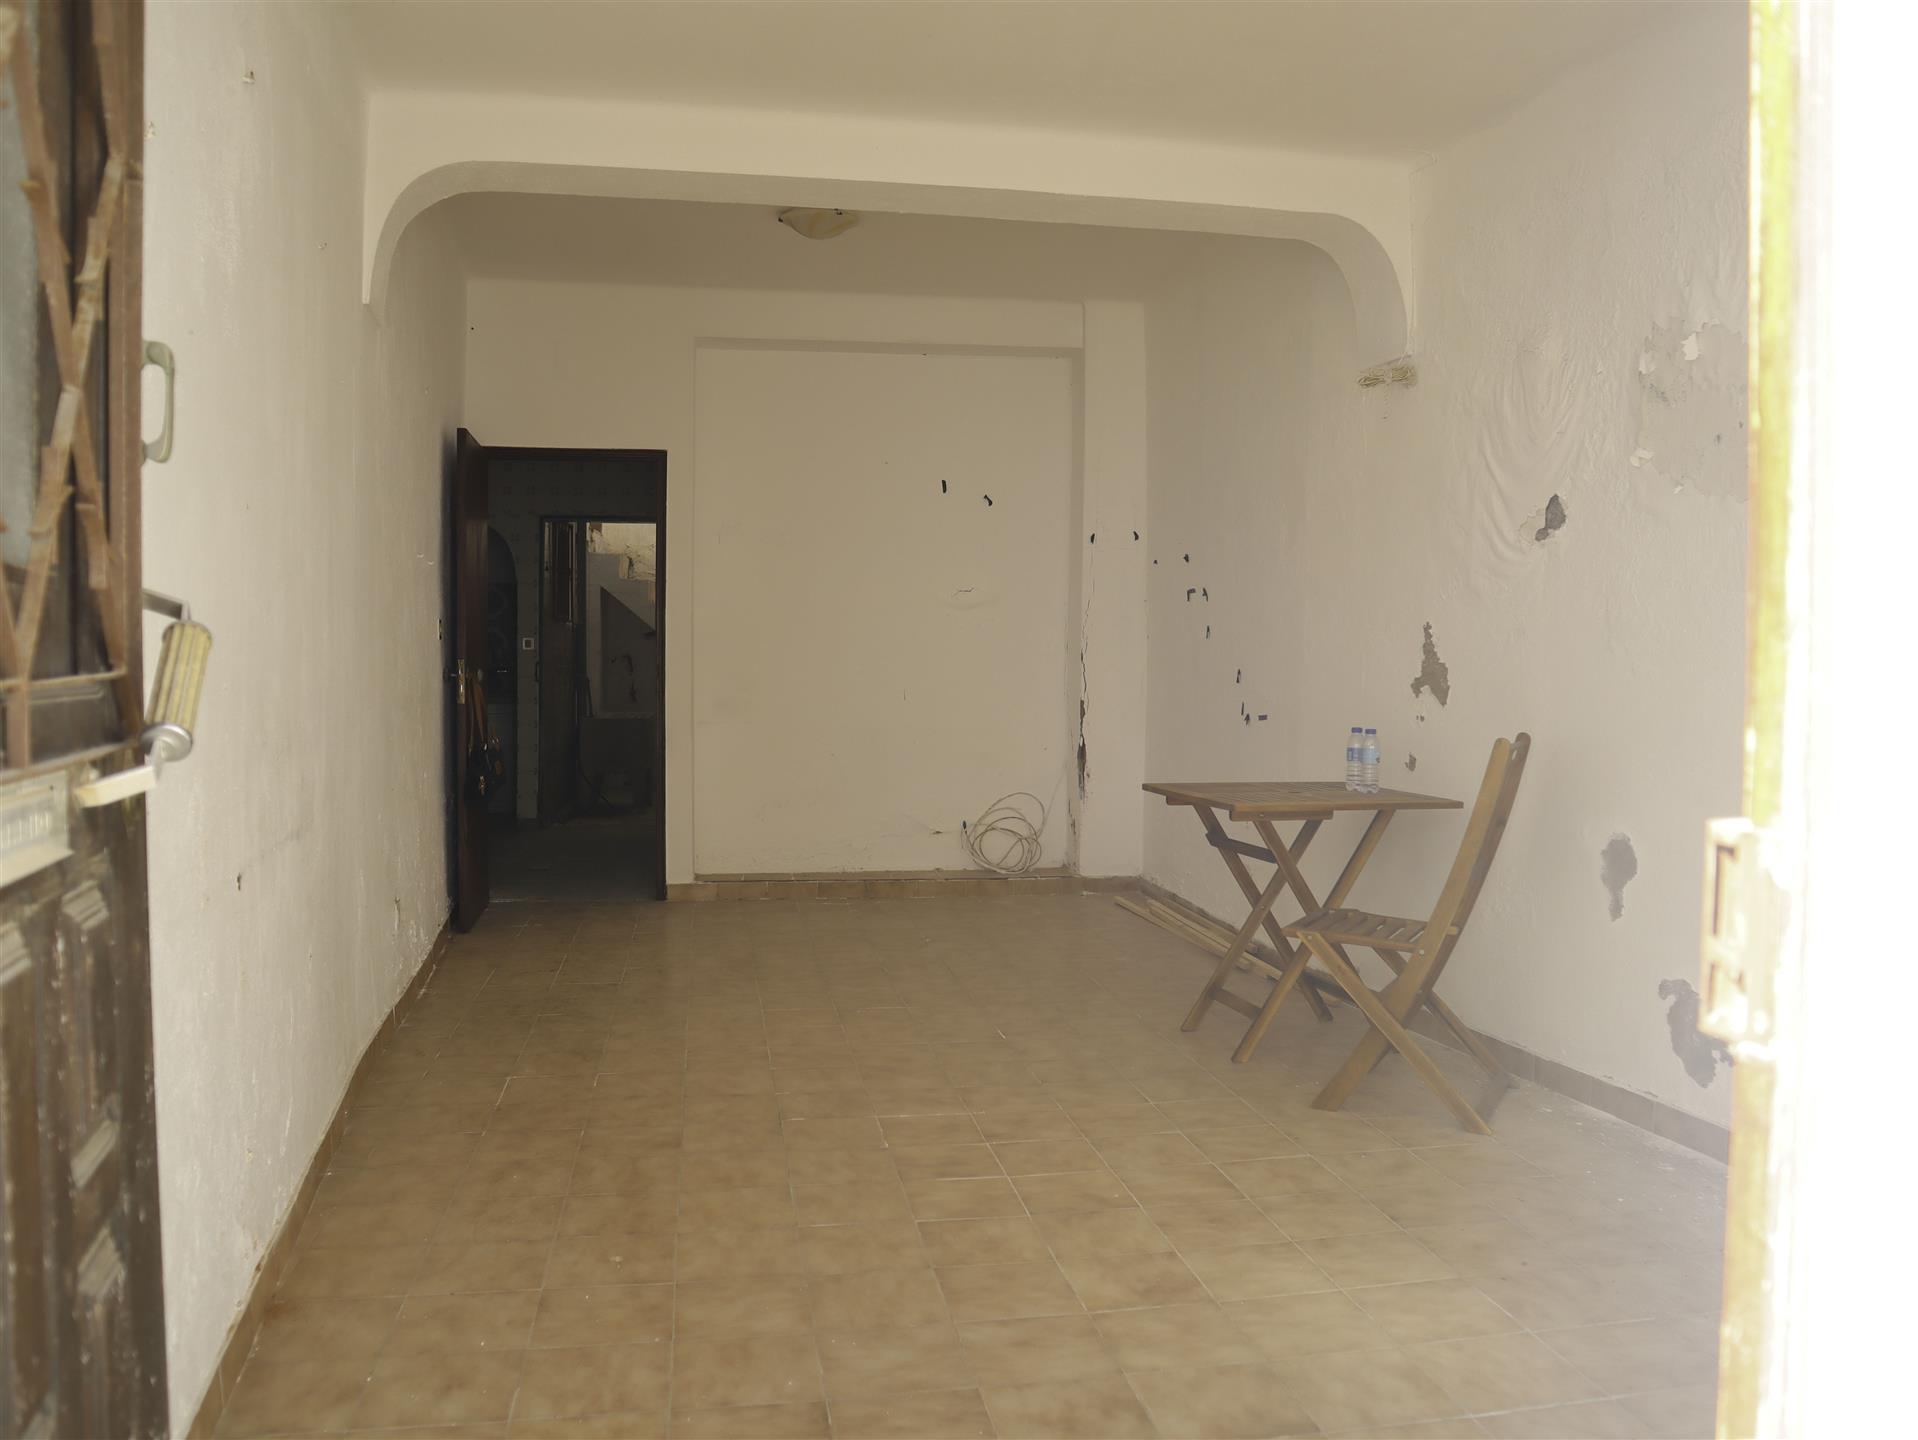 Maison traditionnelle 1 chambre à rénover - Tavira - Algarve